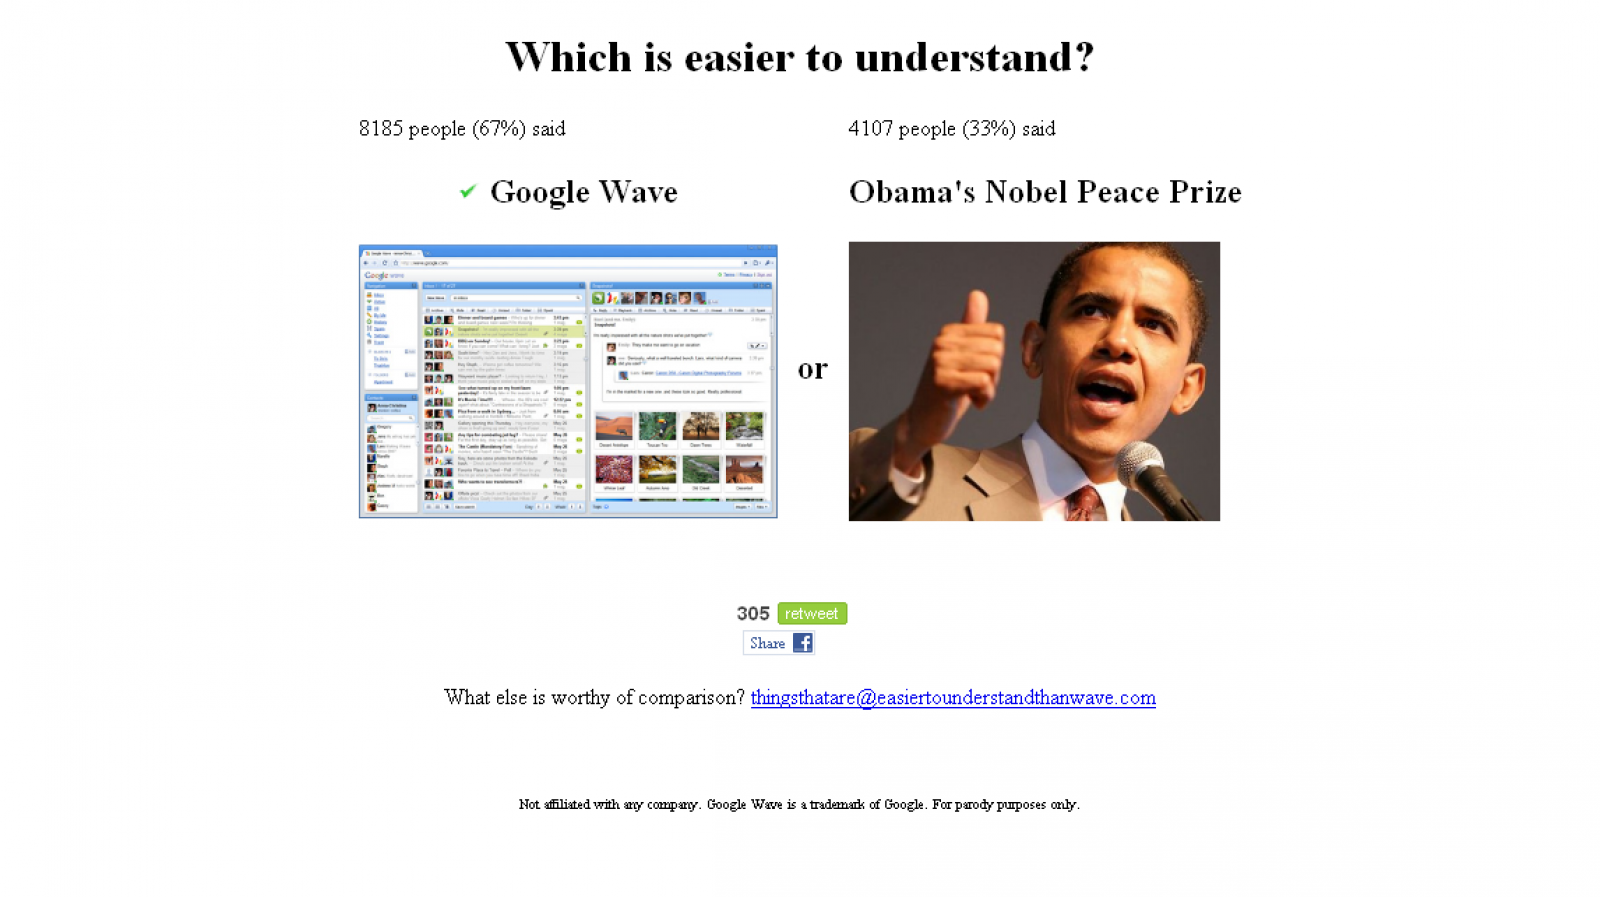 Una web ironiza sobre la dificultad del uso de Google Wave en una encuesta, confrontándolo con todo tipo de opciones